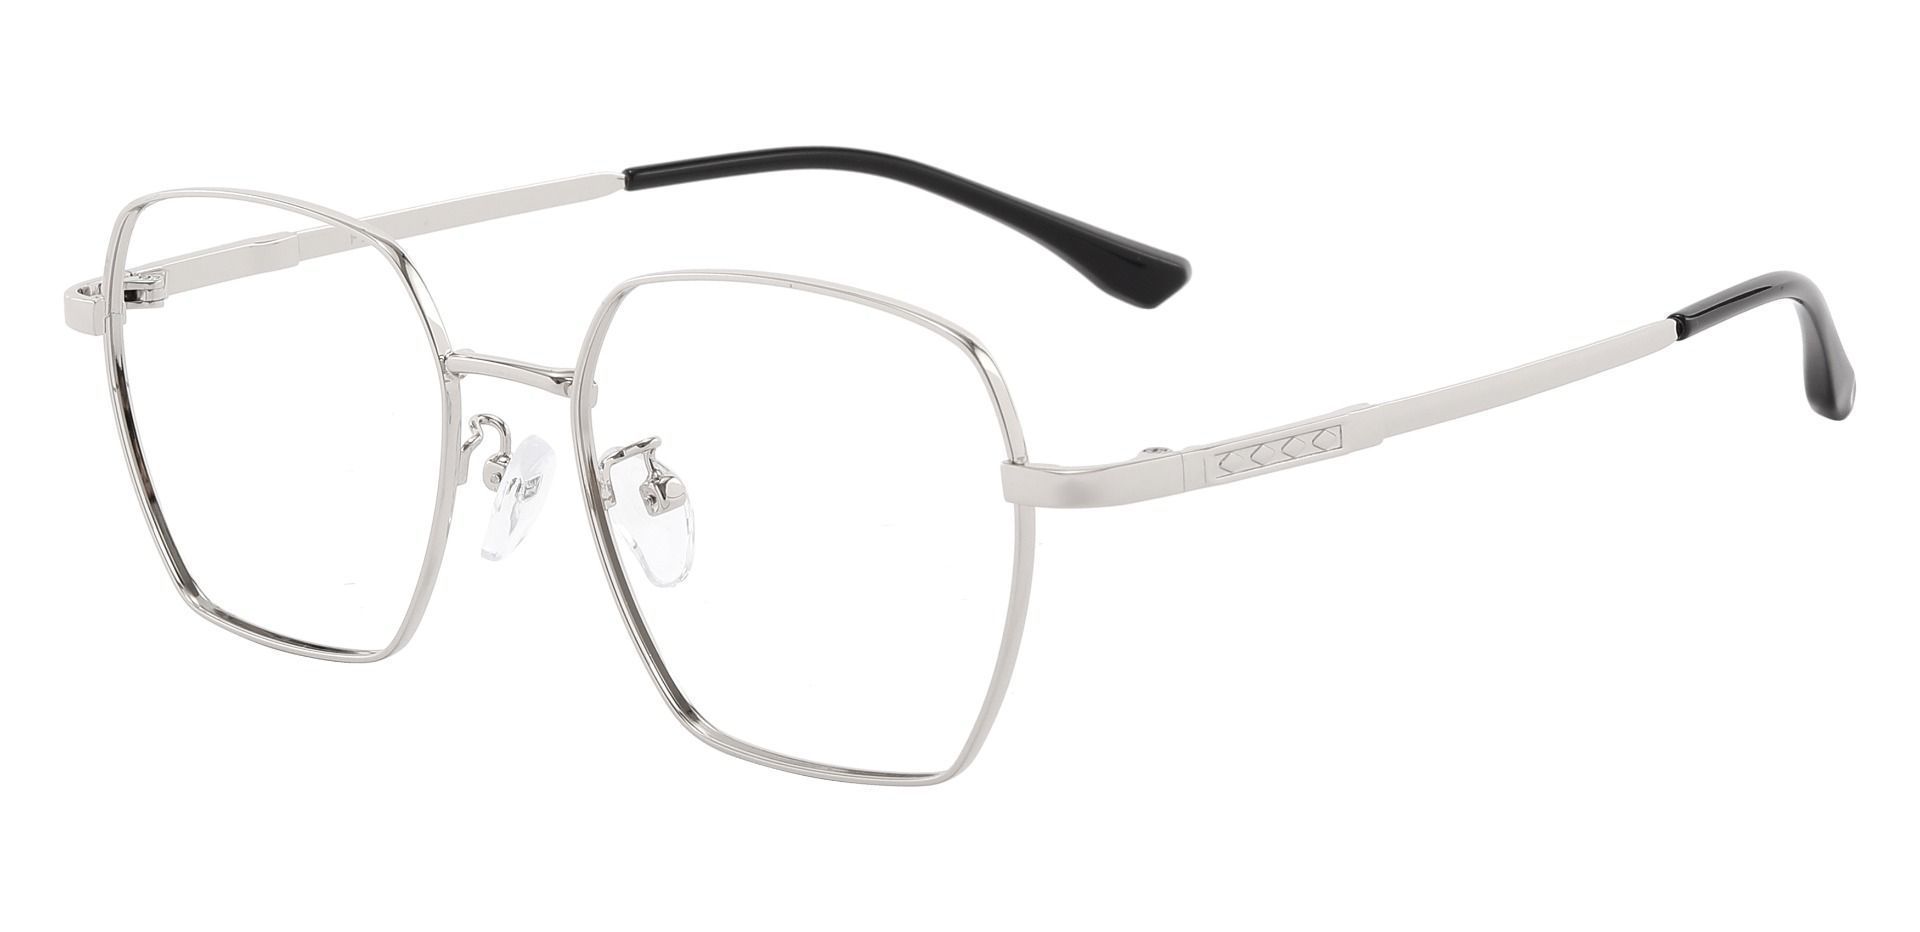 Dawson Geometric Prescription Glasses - Silver